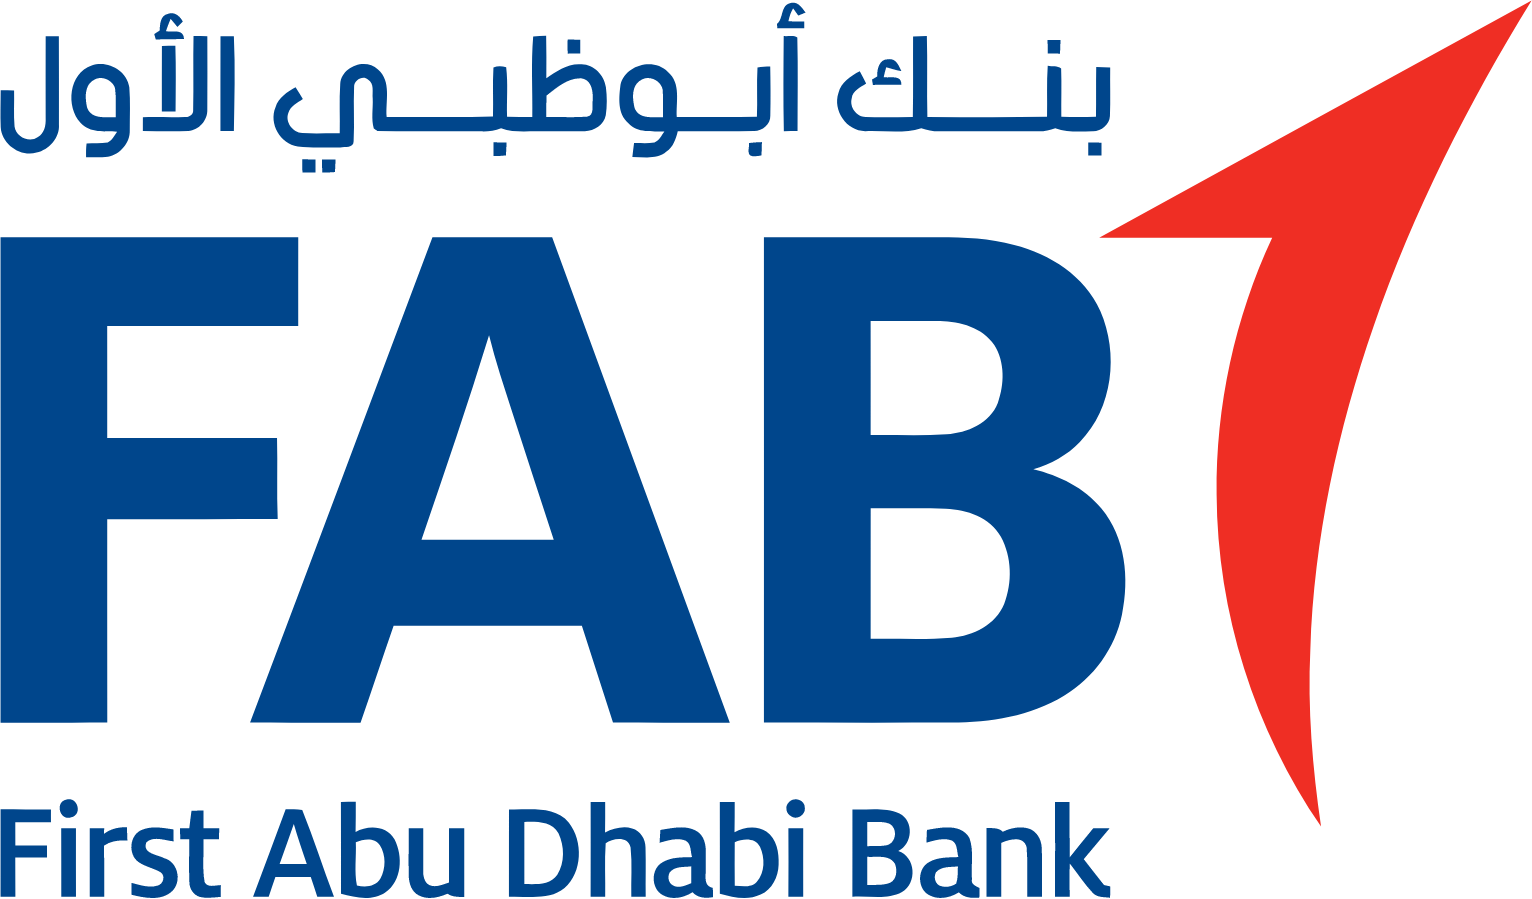 First Abu Dhabi Bank logo large (transparent PNG)